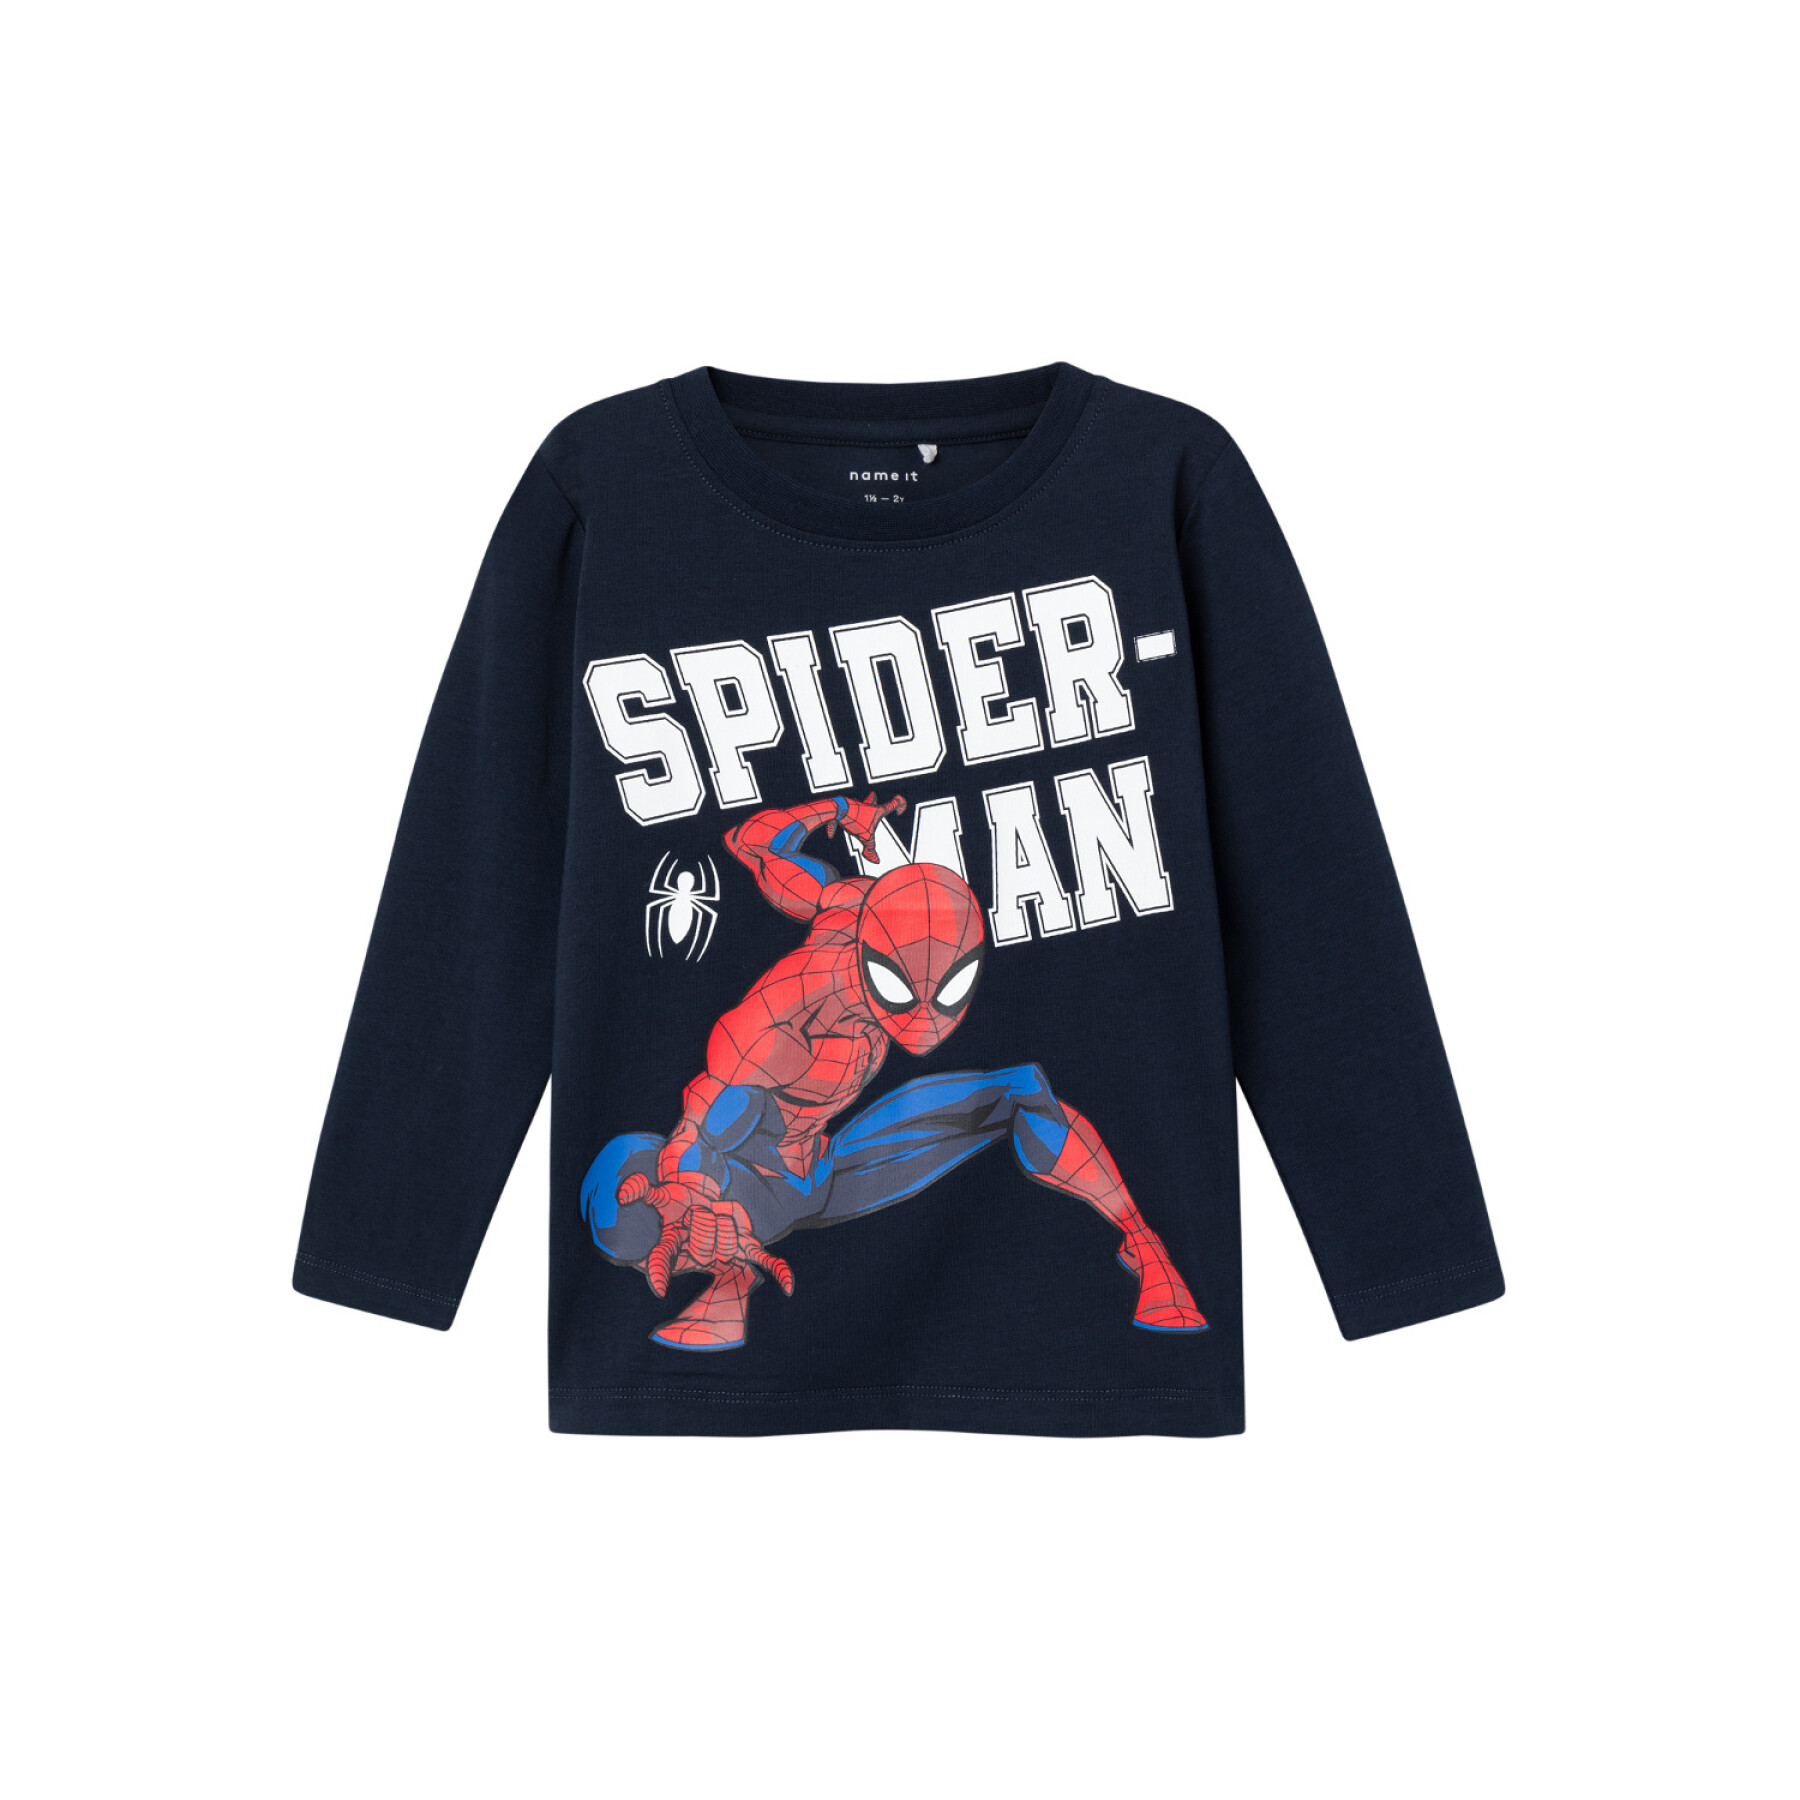 Camiseta de bebé Name it Naza Spiderman